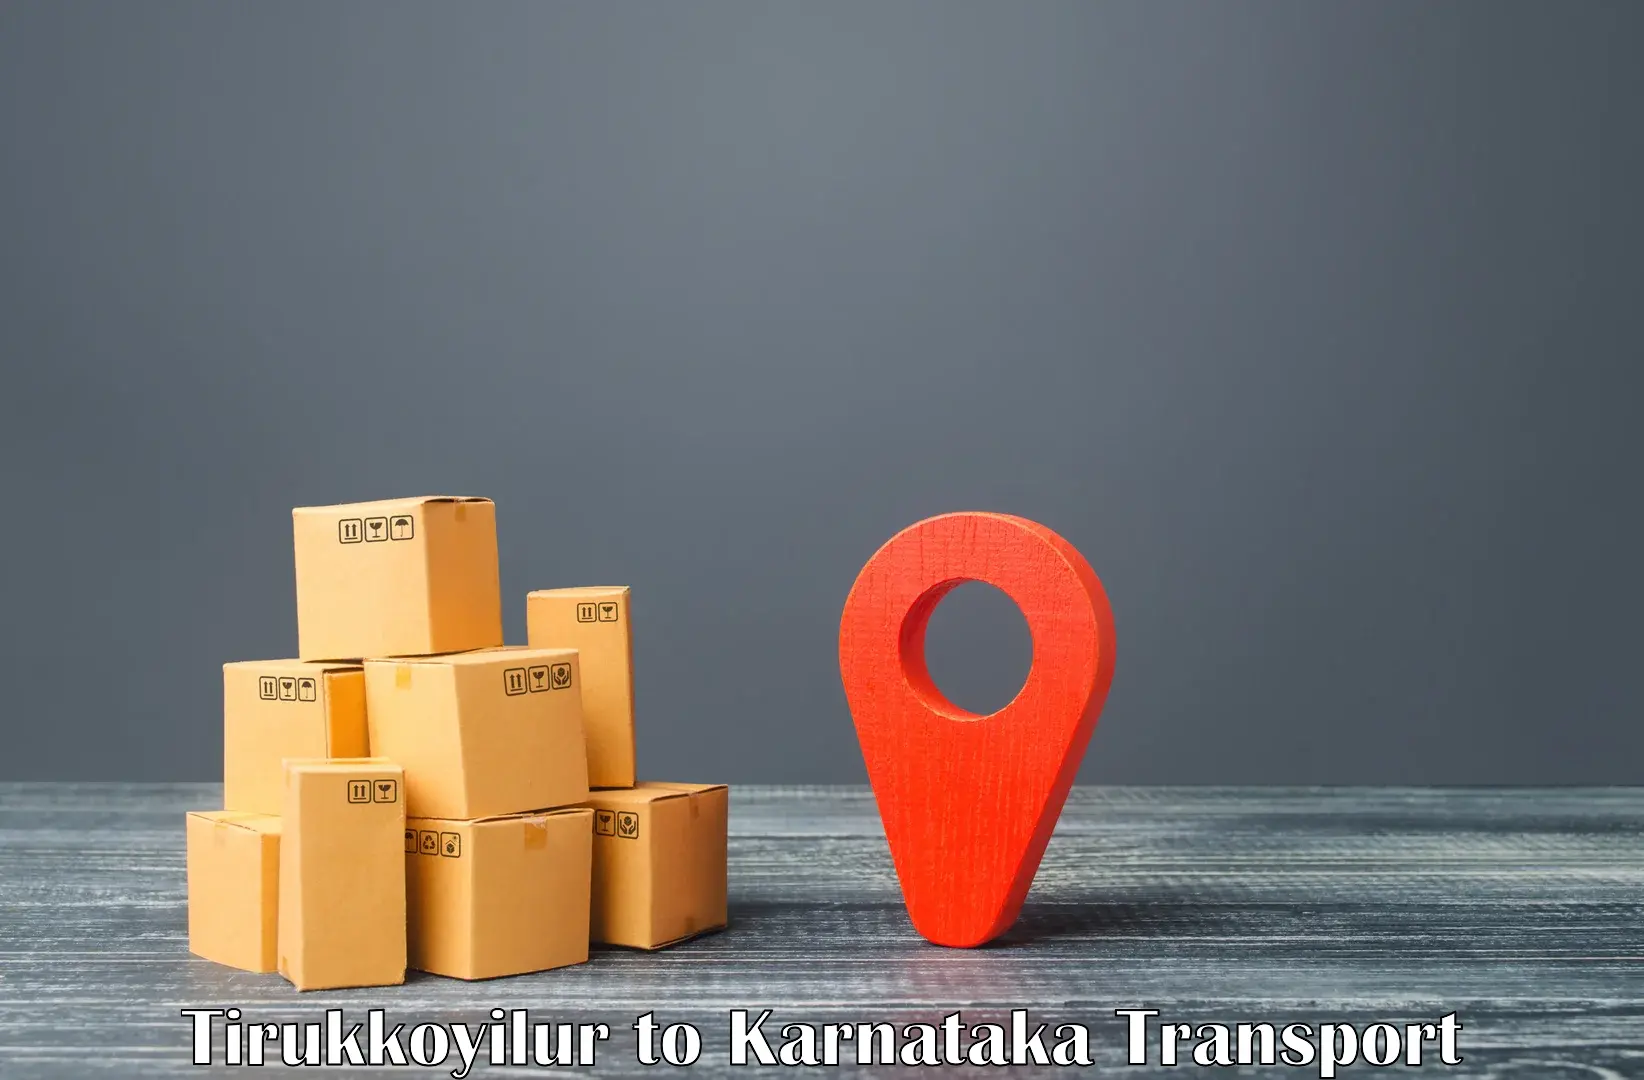 Interstate transport services Tirukkoyilur to Karnataka